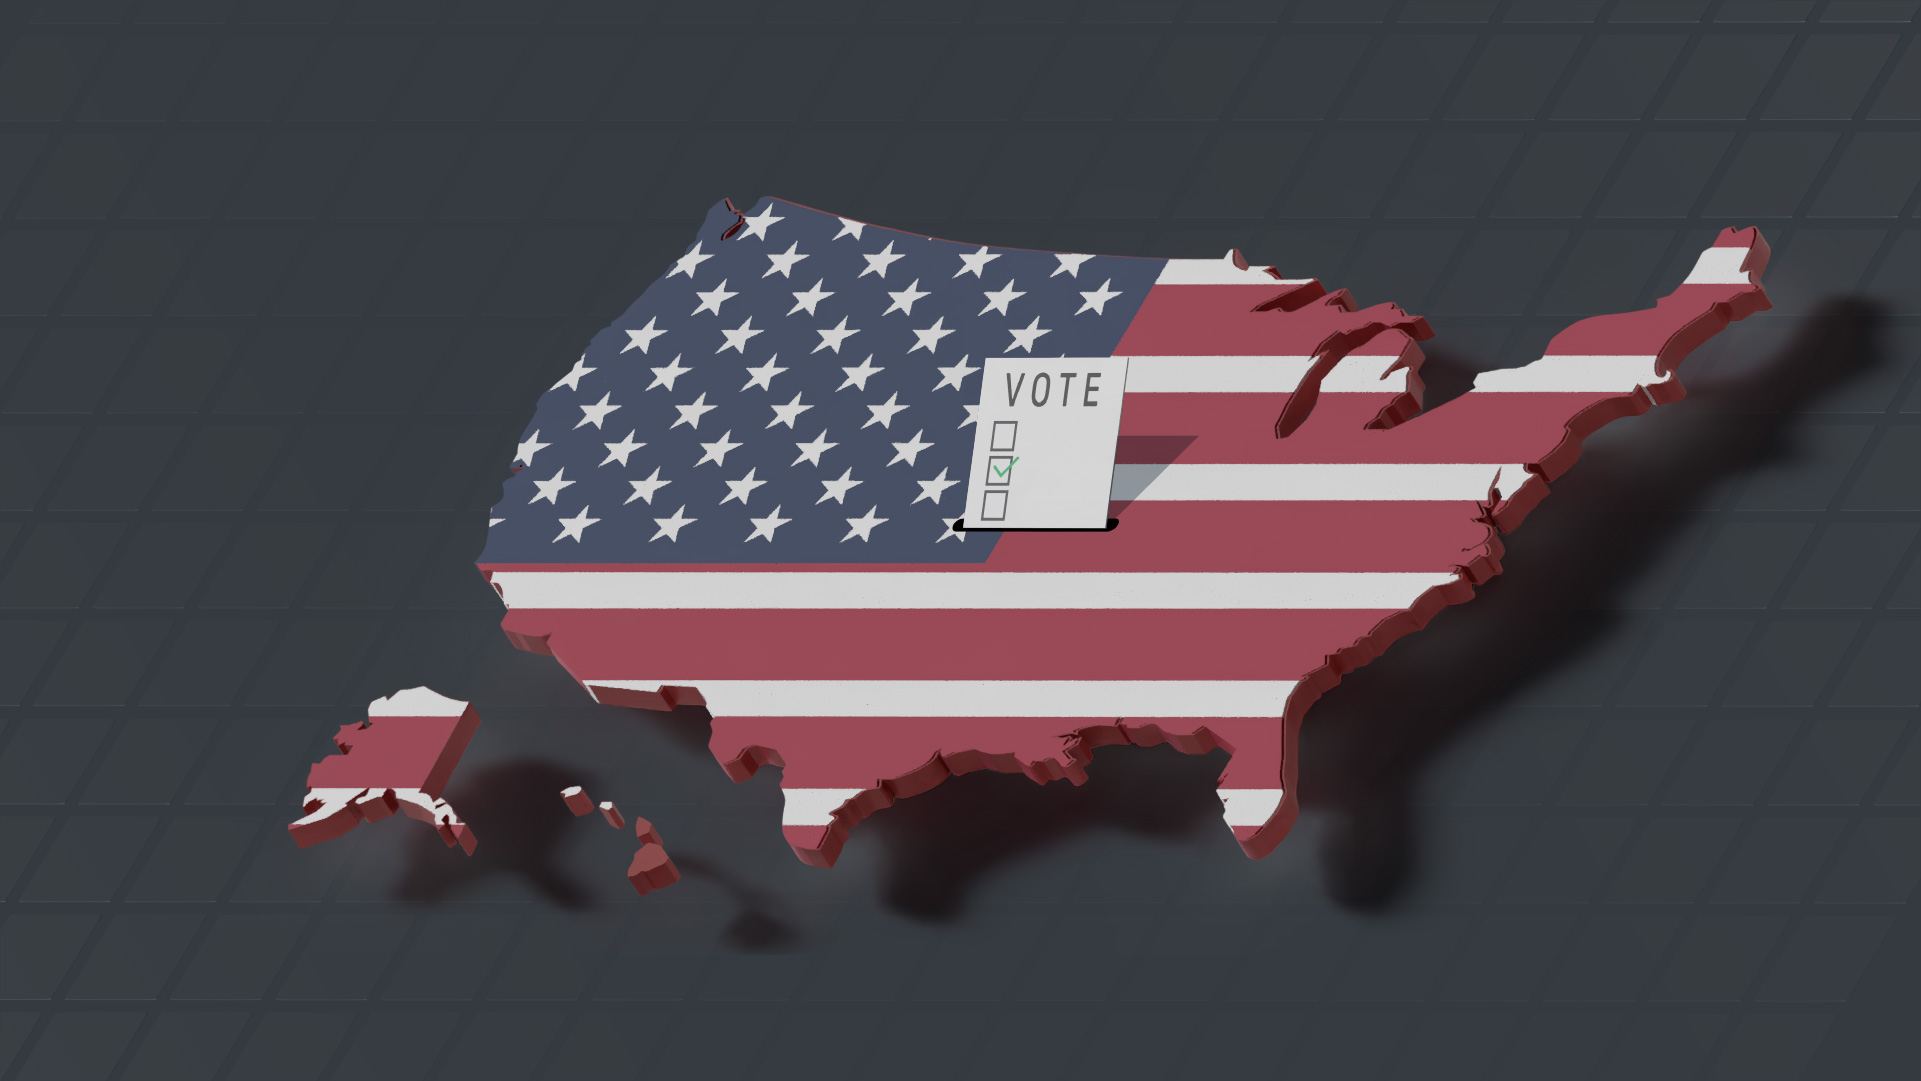 présidentielle américaine - US elections - featured image